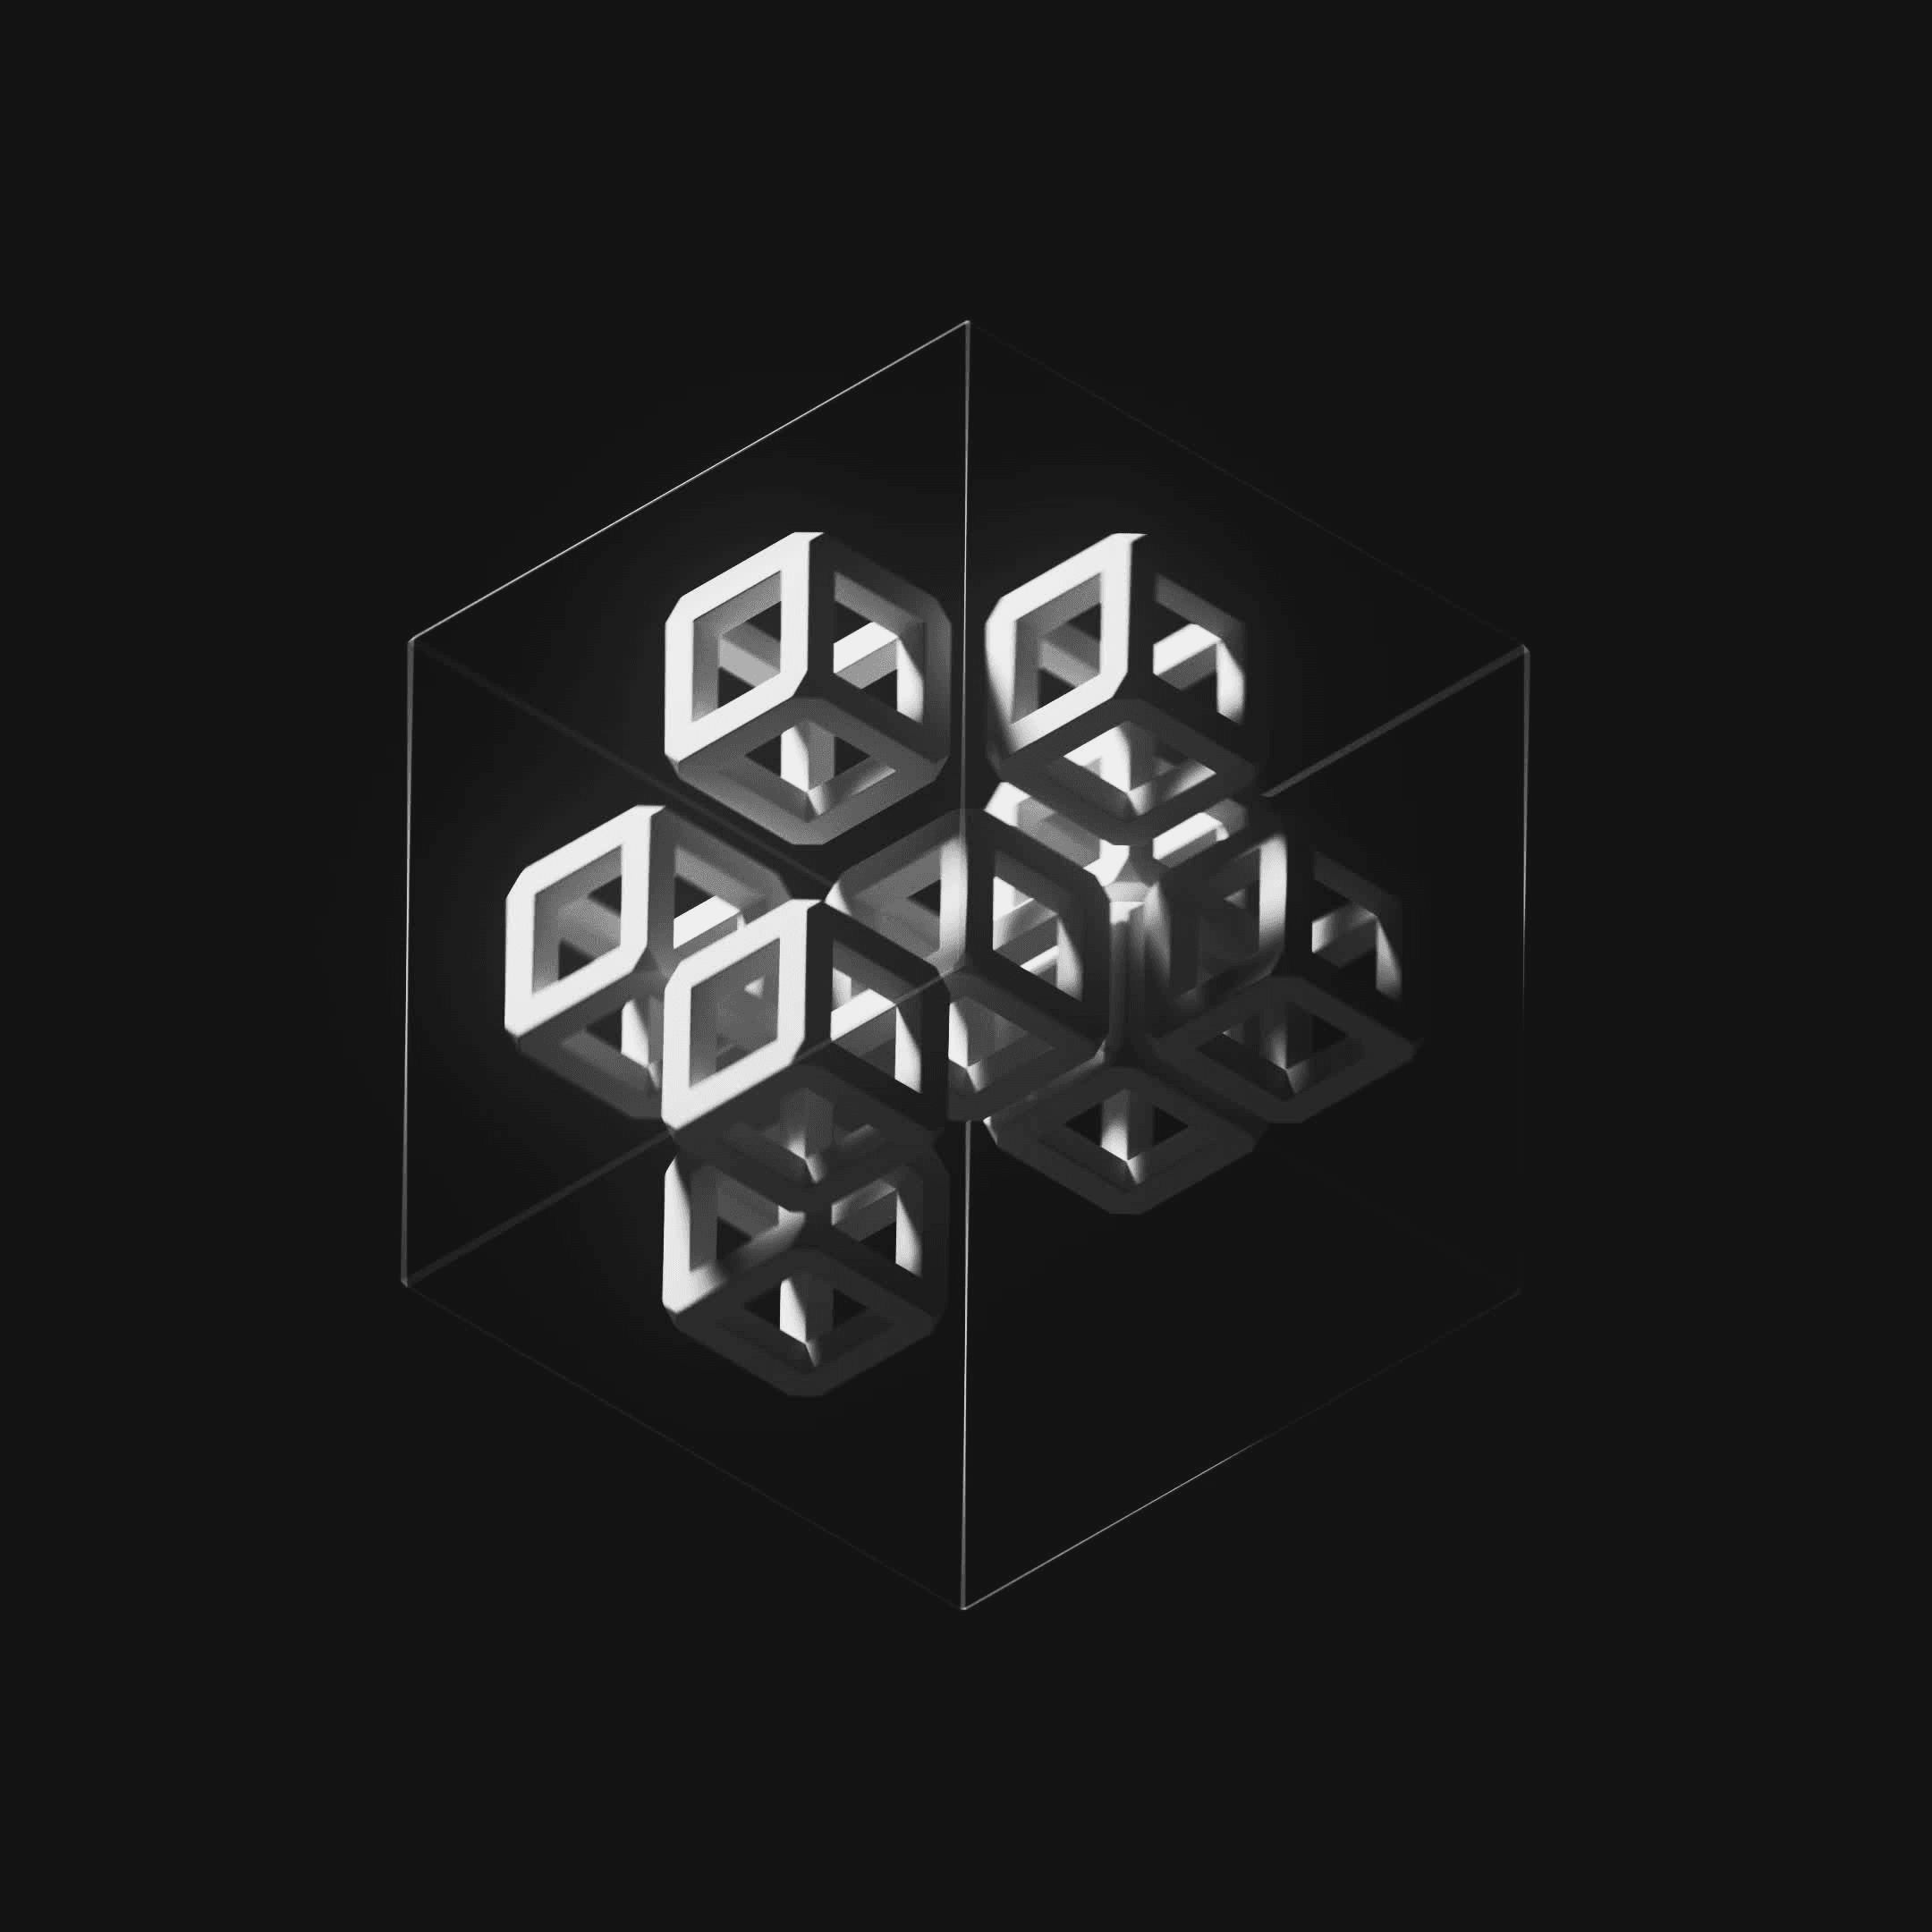 Ten Cubes #246/247